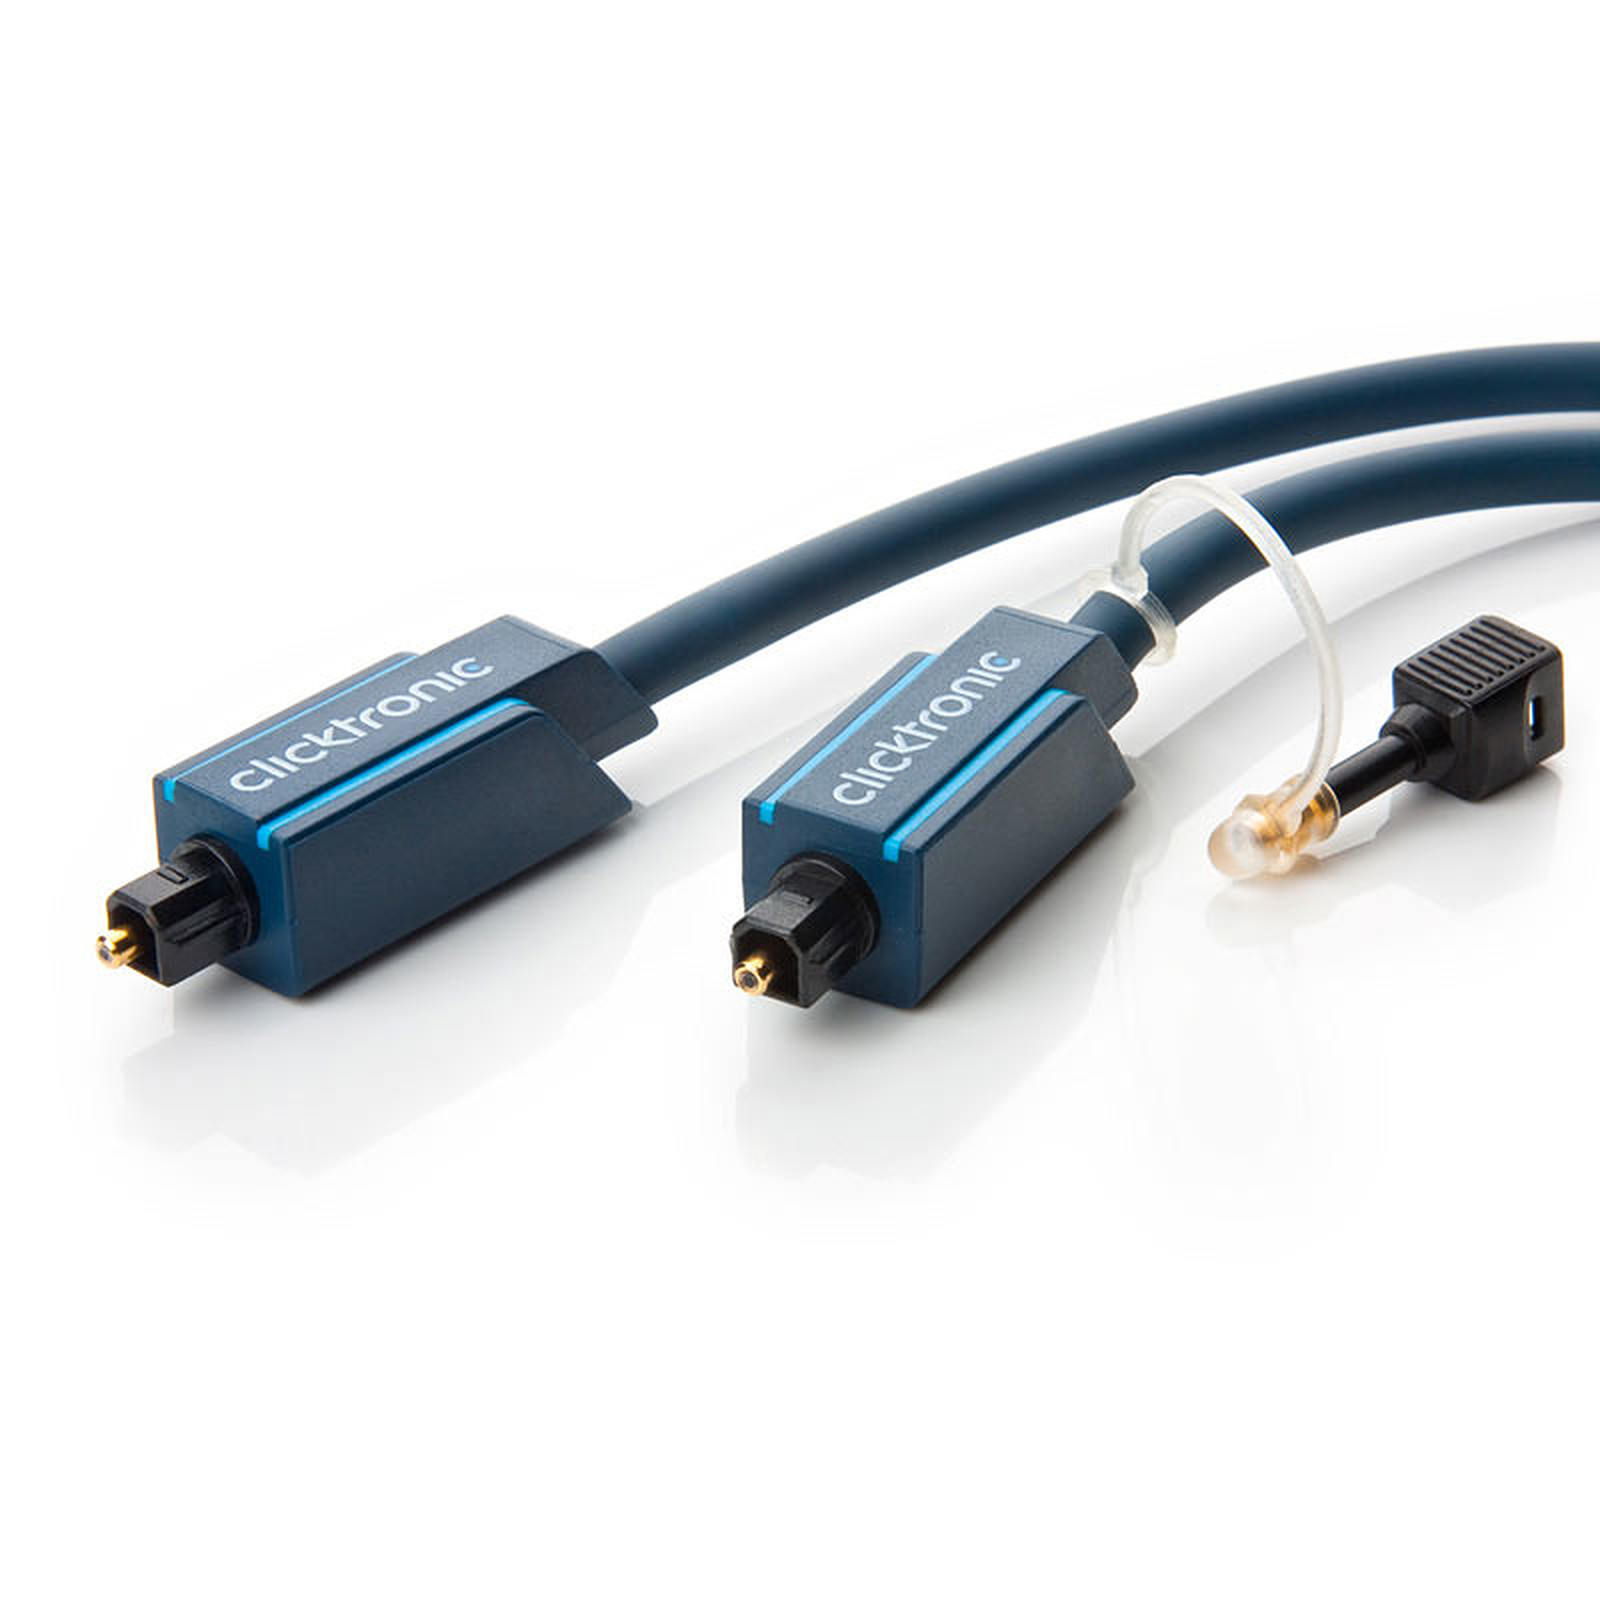 Clicktronic cable Toslink (1 mètre) - Cable audio numerique Clicktronic